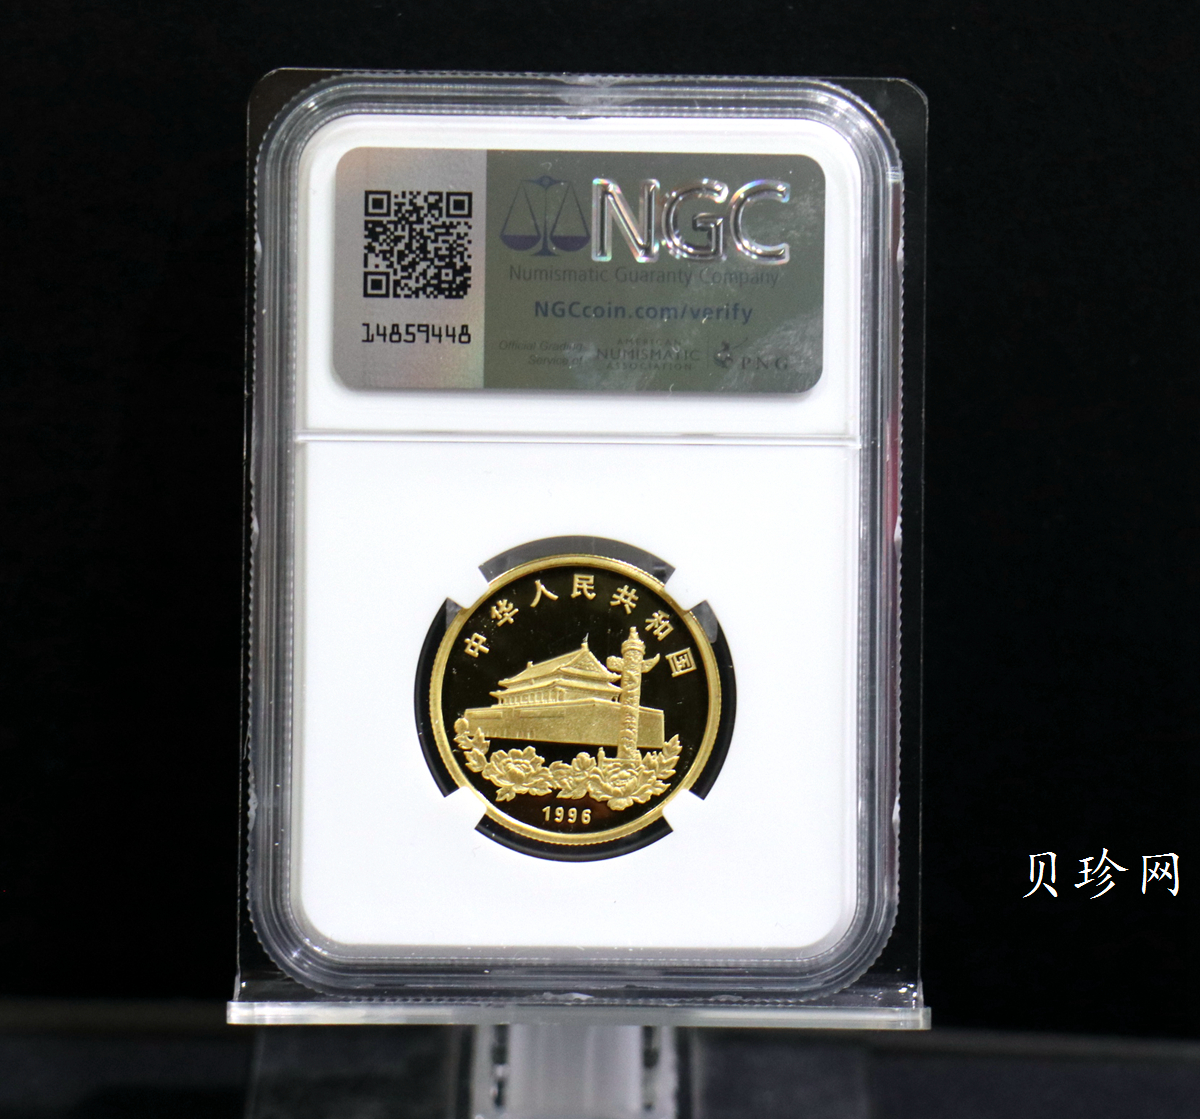 【961202】1996年香港回归祖国金纪念币（第2组）1/2盎司精制金币